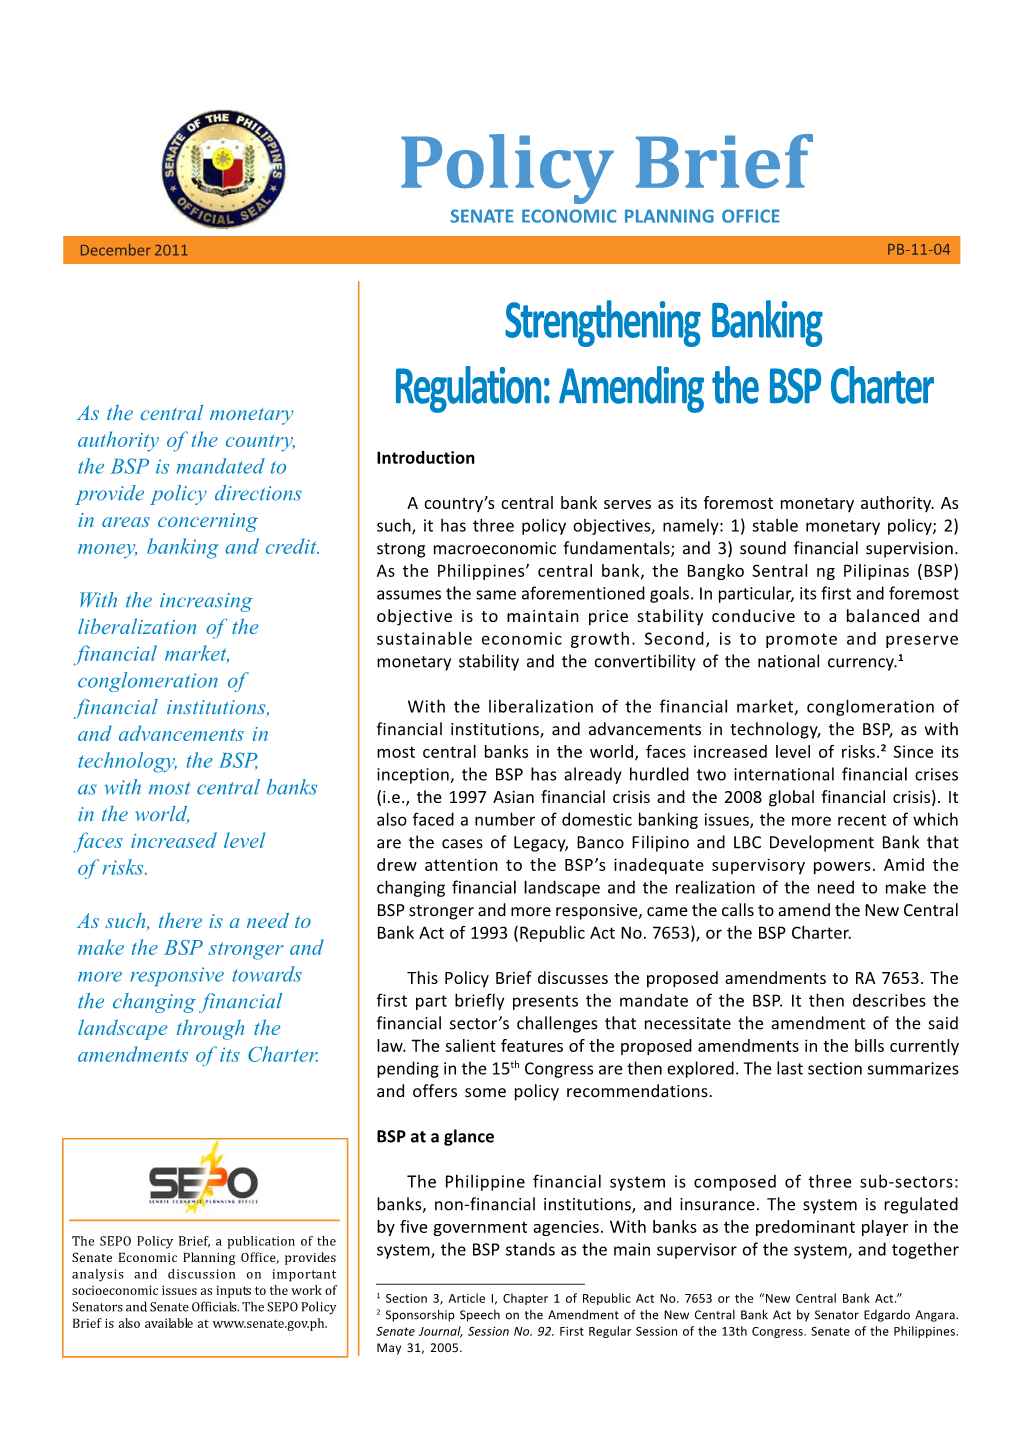 Strengthening Banking Regulation